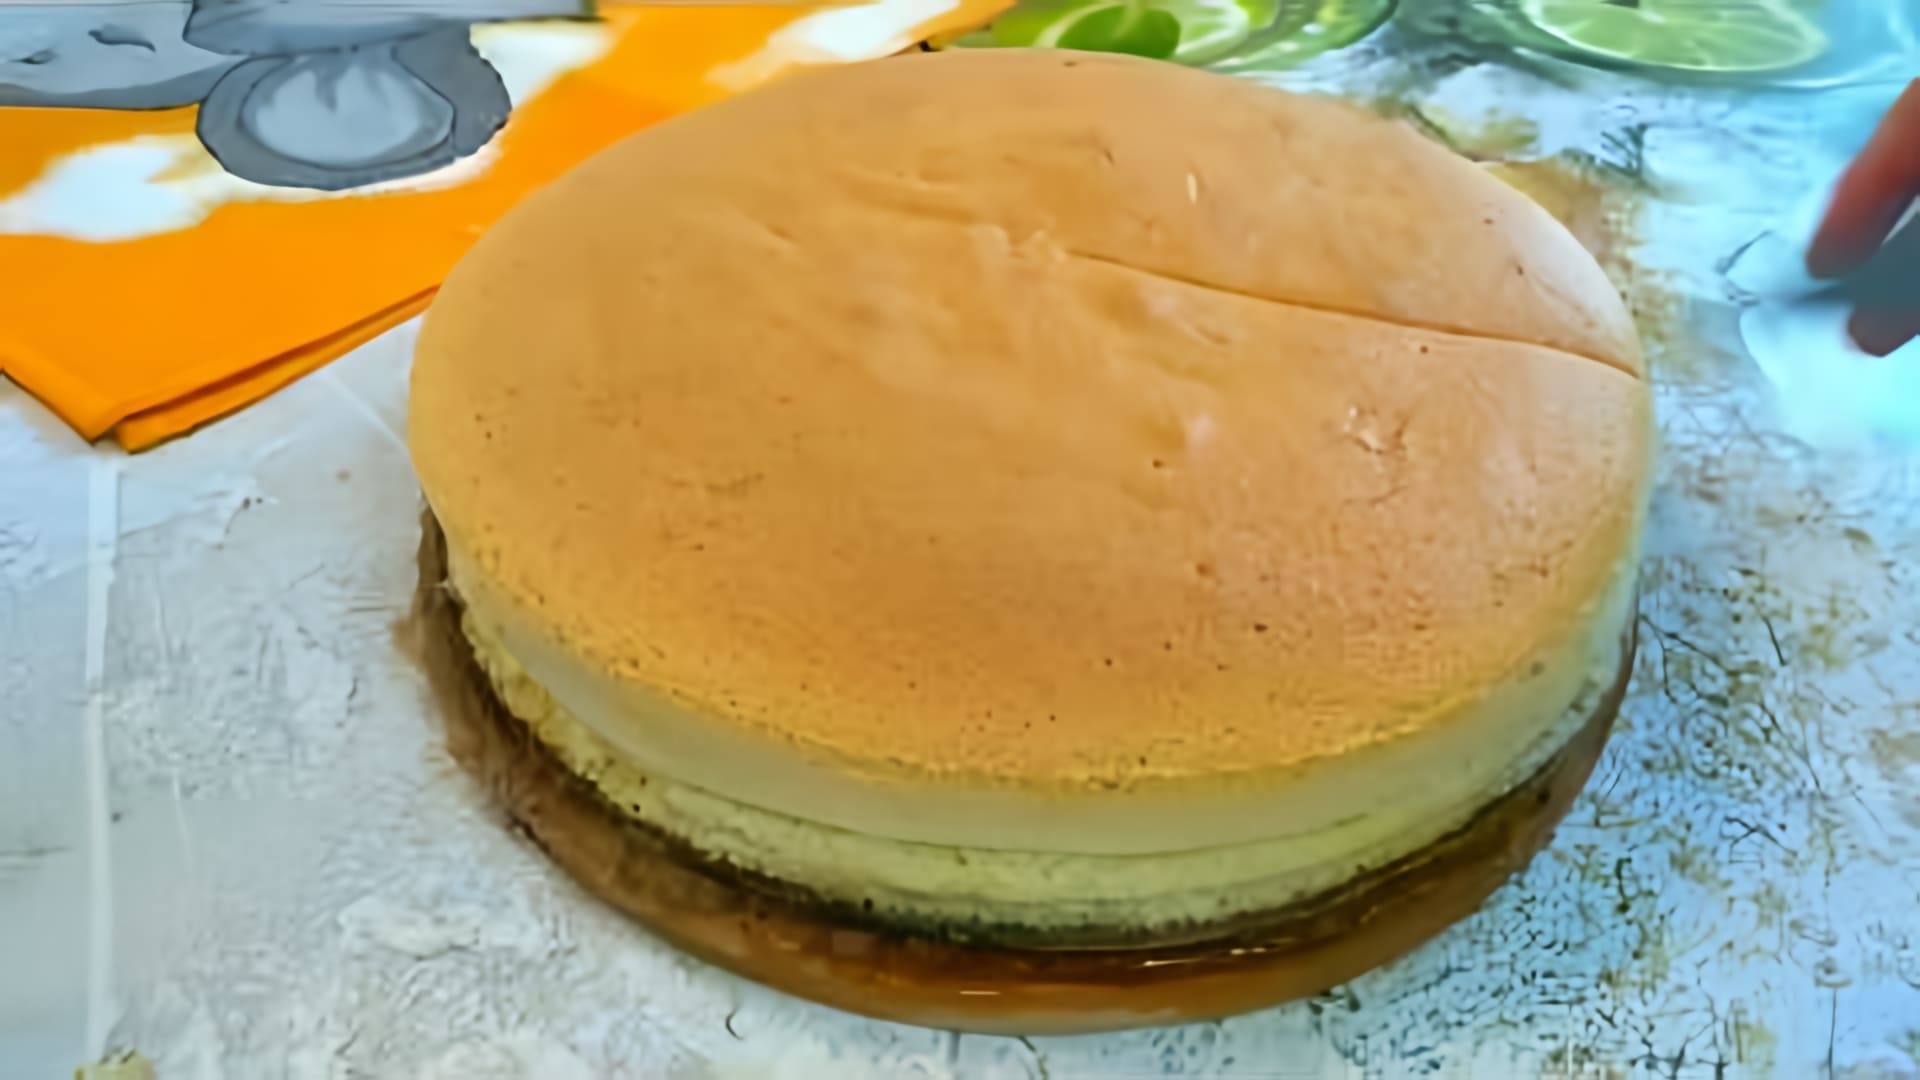 В этом видео демонстрируется процесс приготовления японского бисквита Кастелло